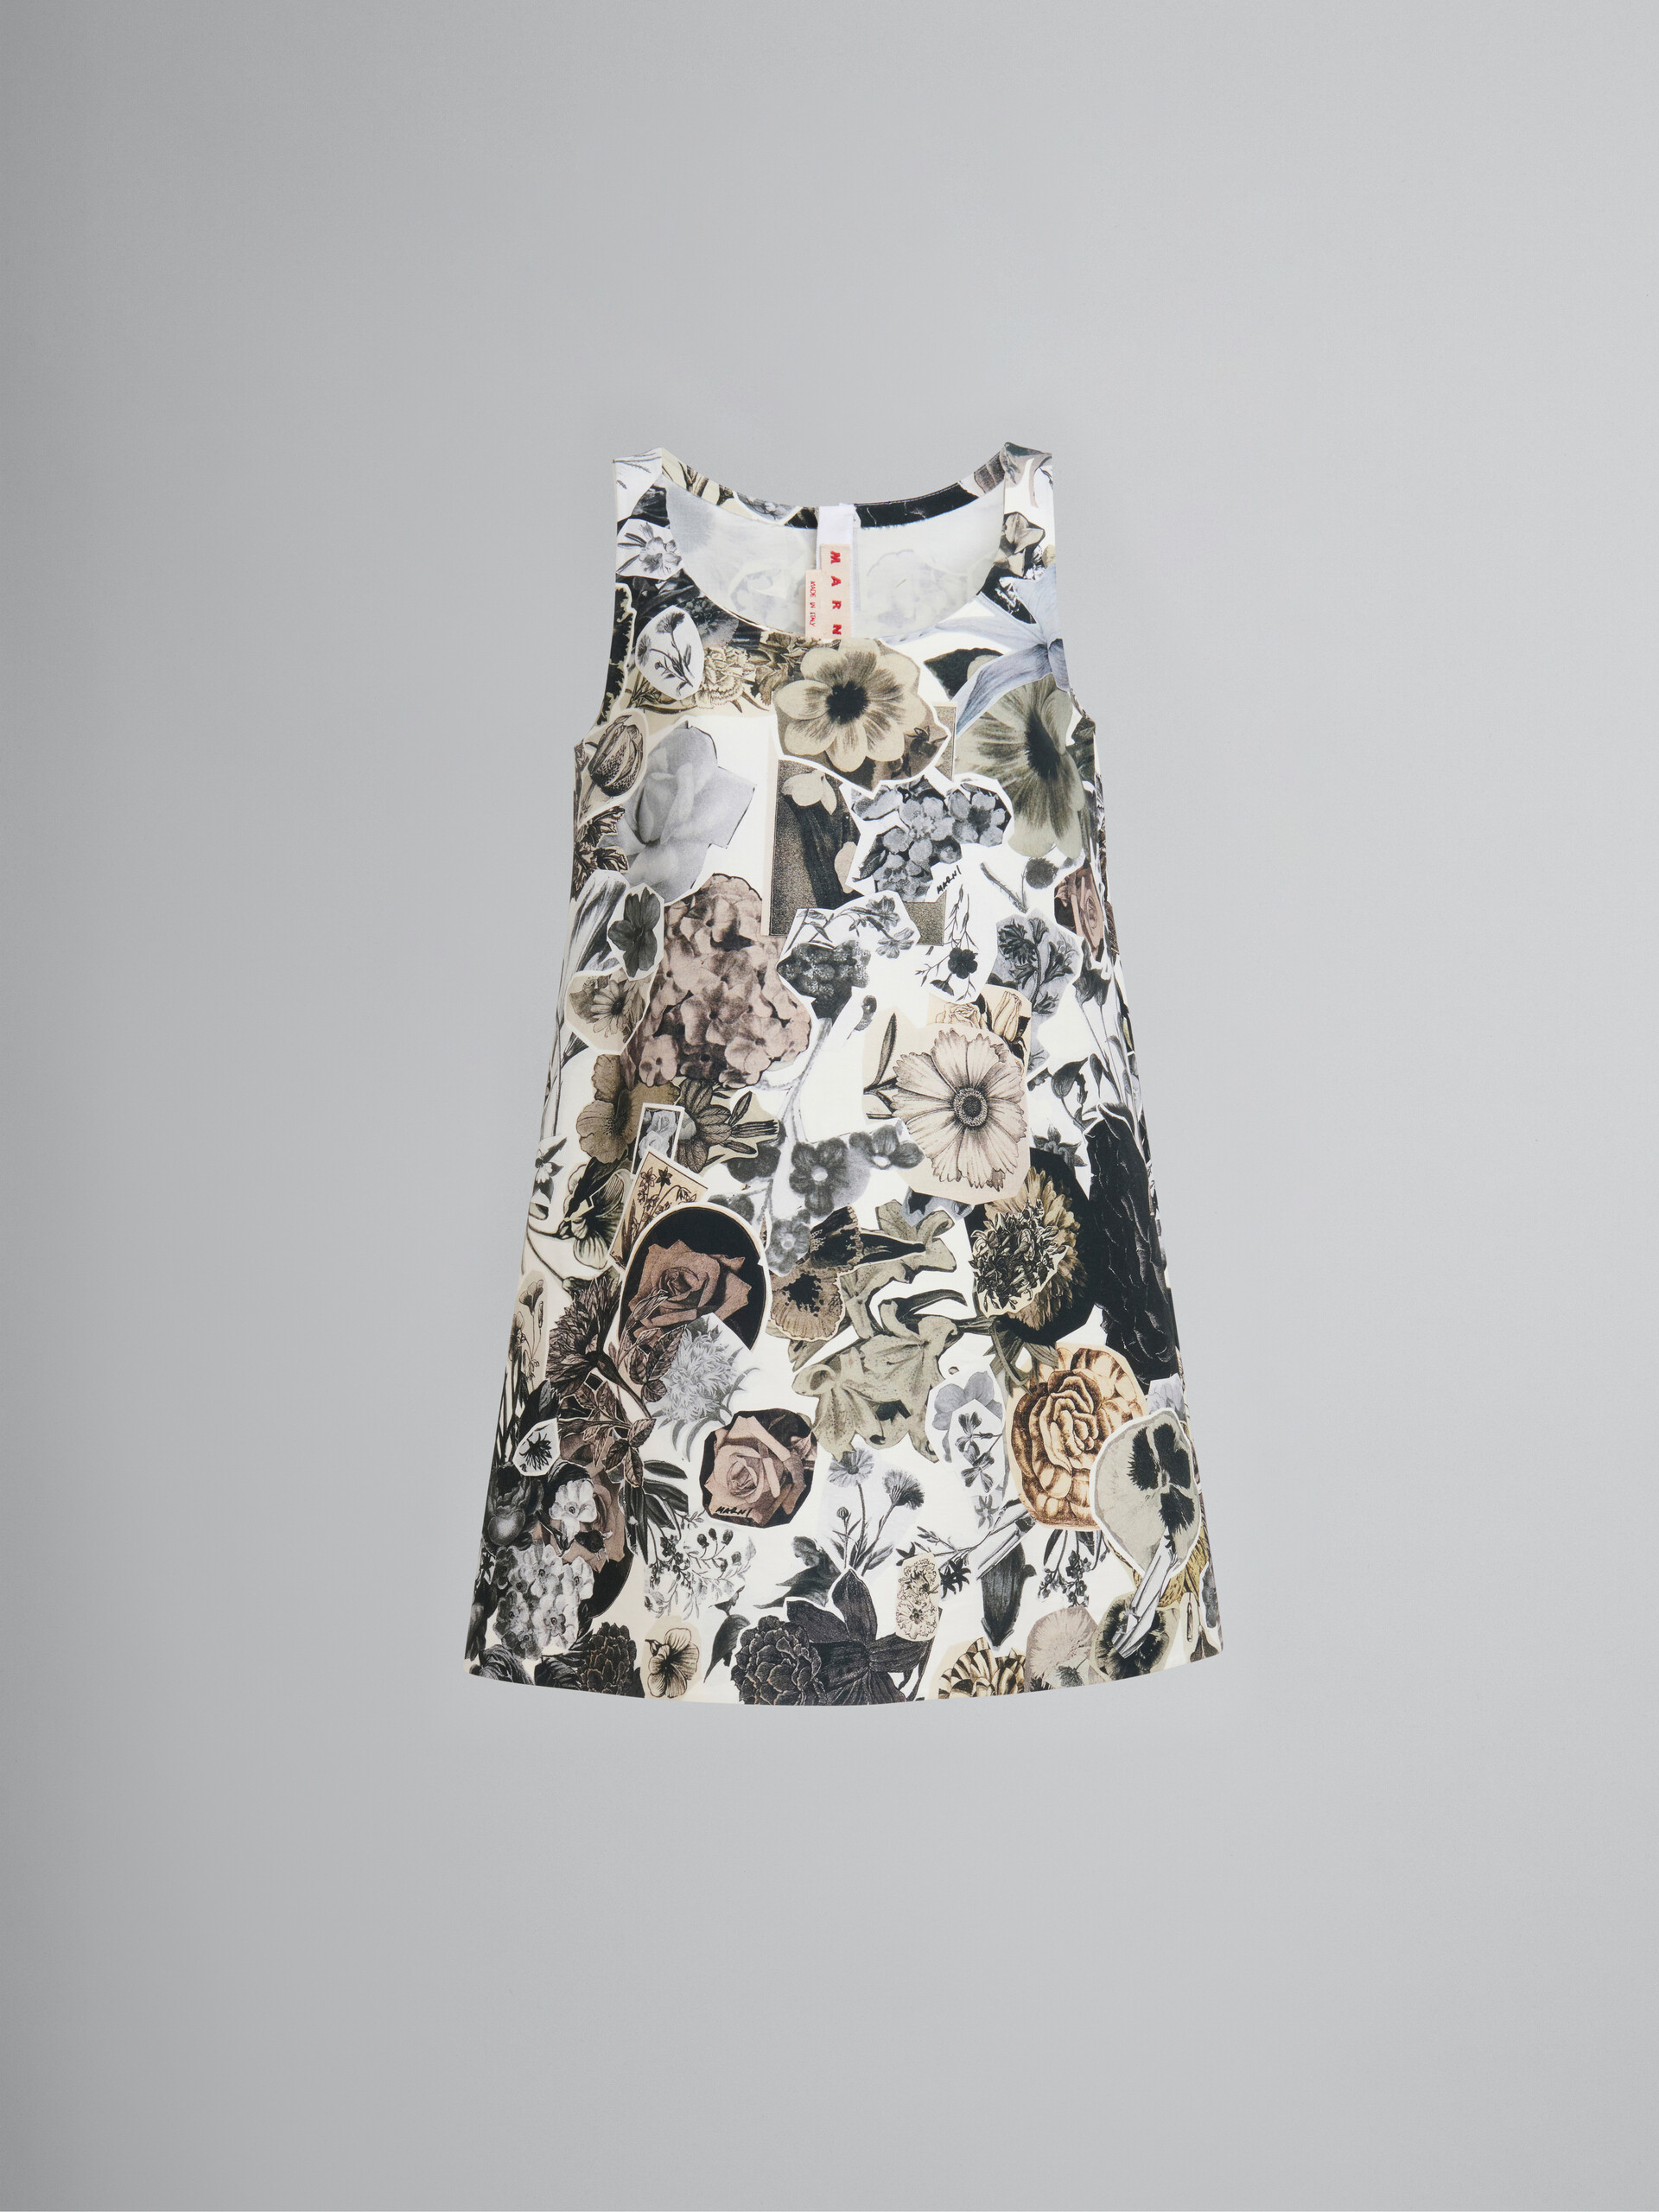 Schwarz-weißes A-Linien-Kleid aus Cady mit Nocturnal-Print - Kleider - Image 1